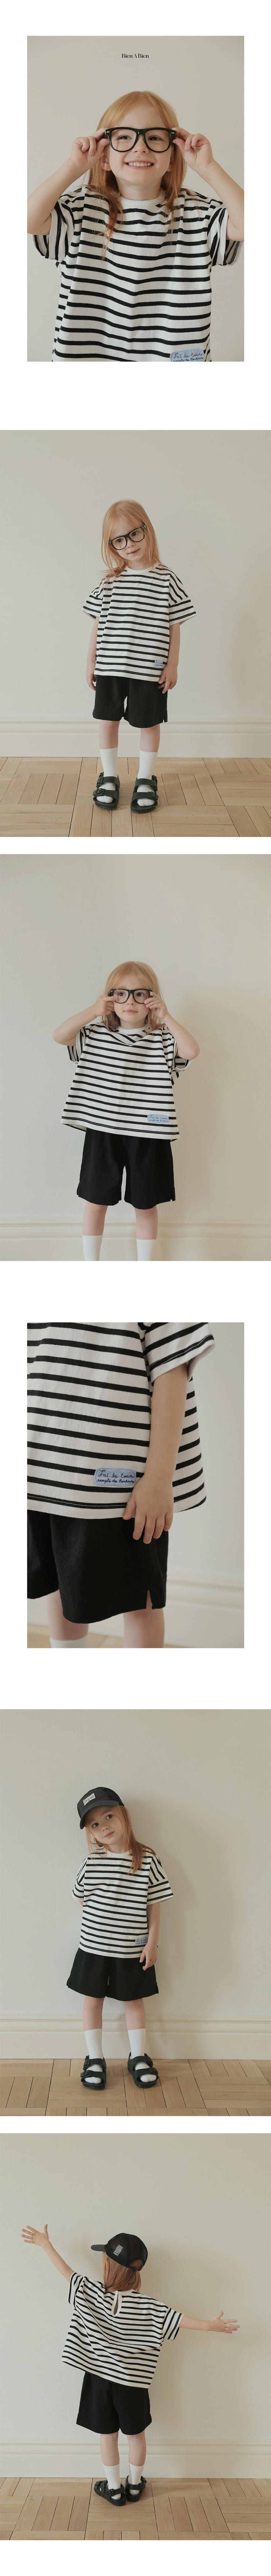 Bien A Bien - Korean Children Fashion - #stylishchildhood - Most Tee - 3